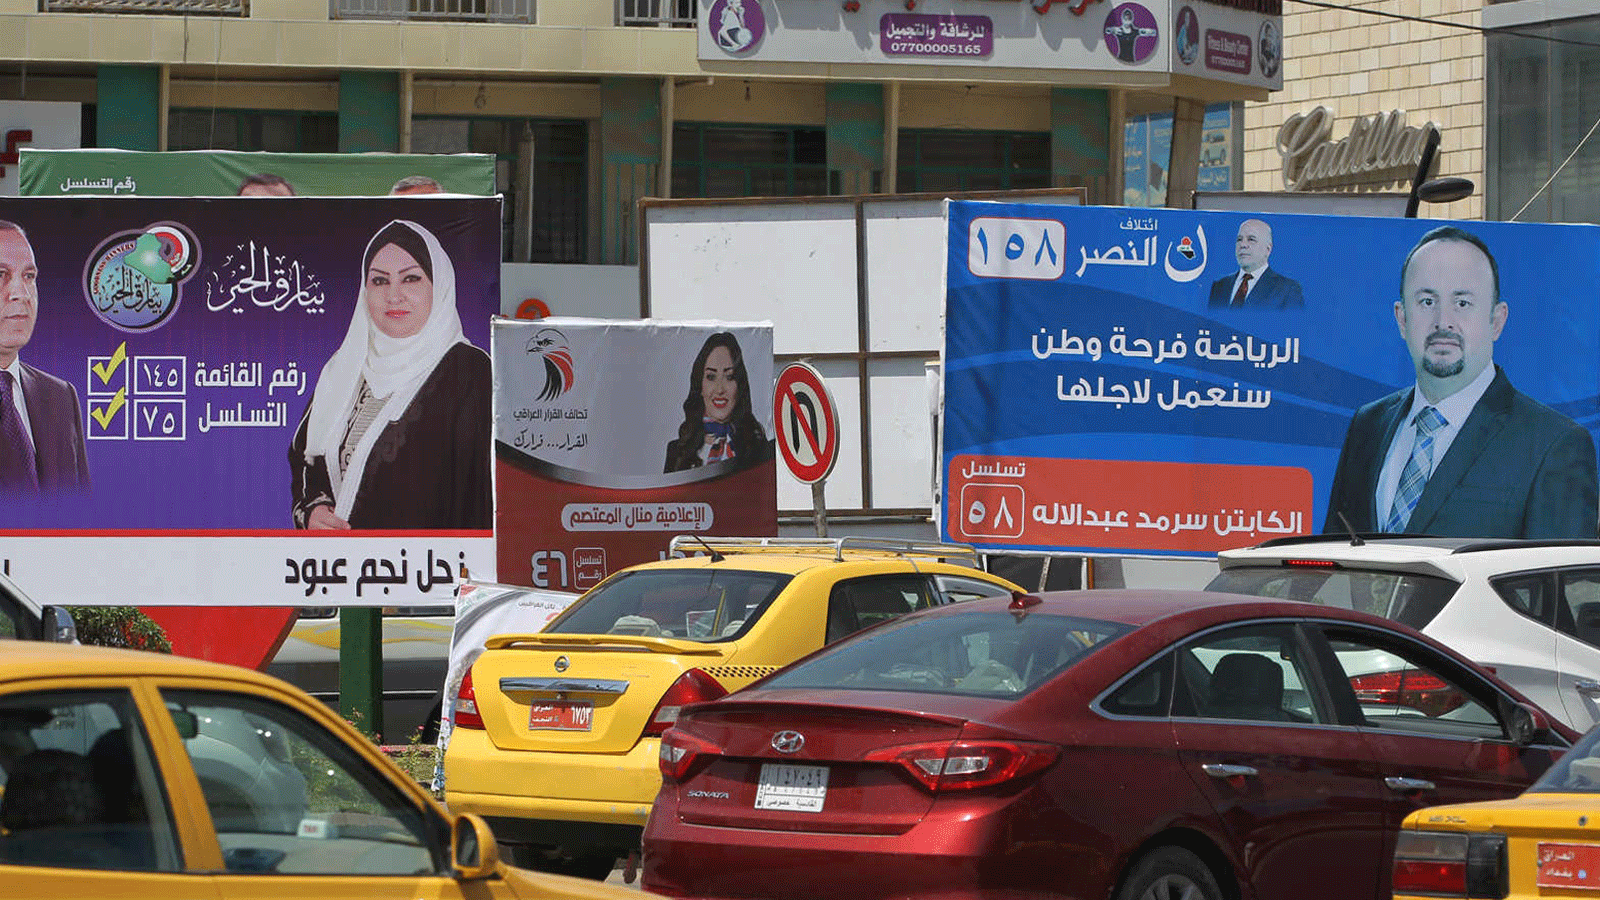 دعايات لمرشحي الانتخابات المبكرة في أحد شوارع بغداد